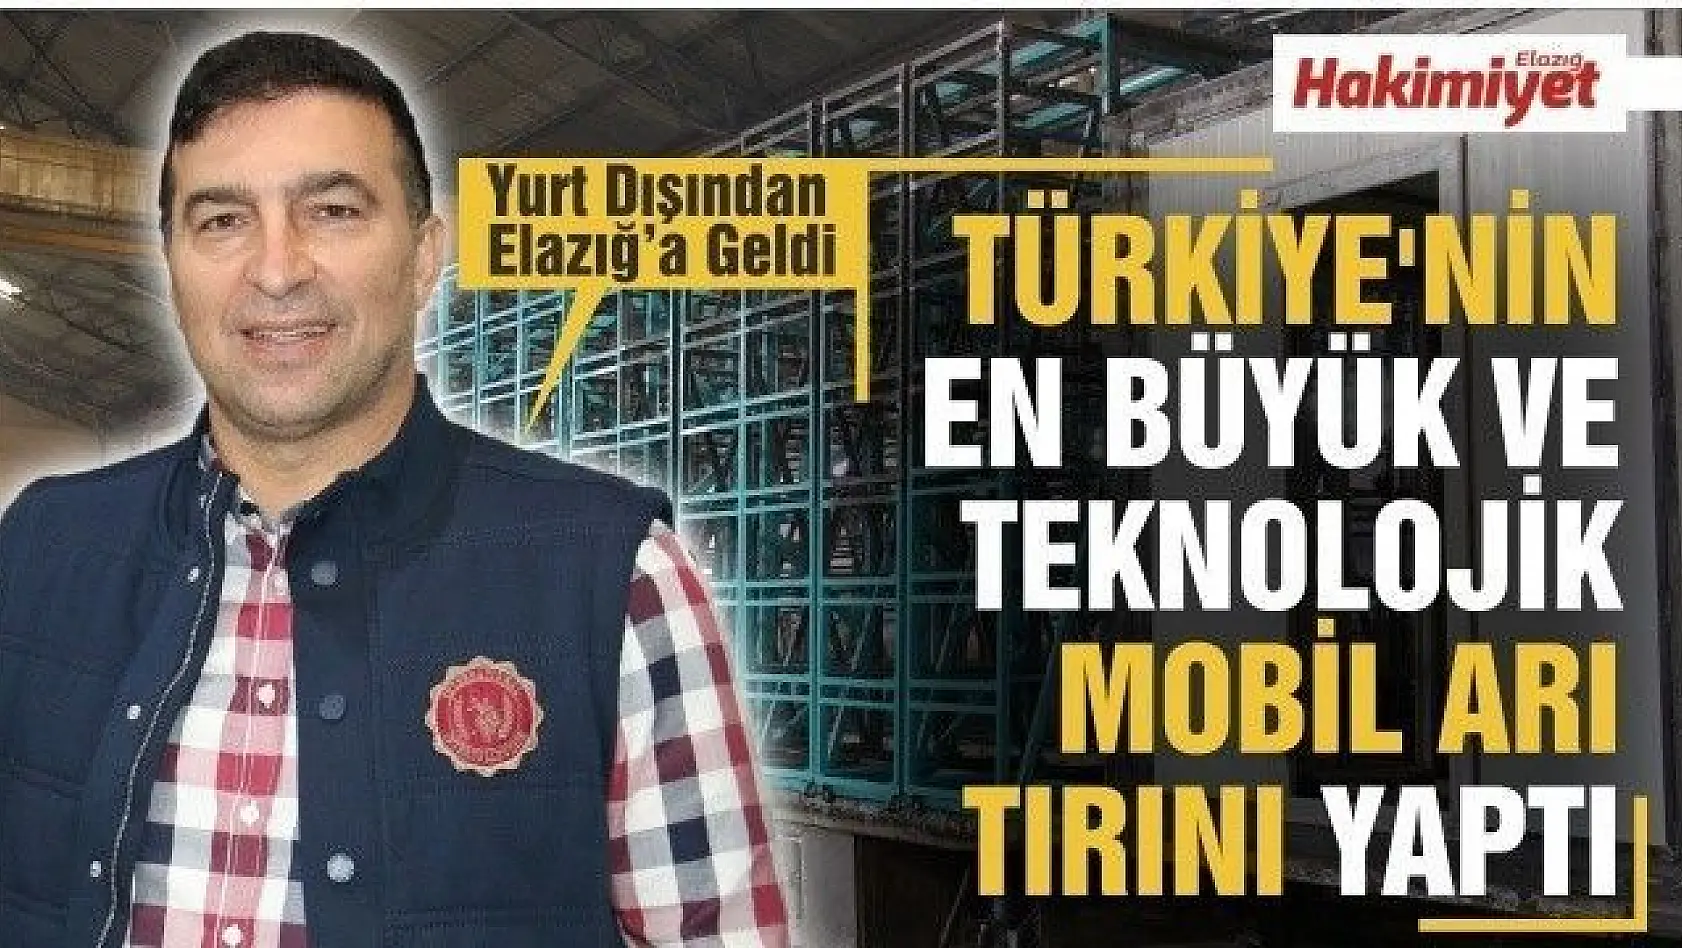 Yurt dışından geldi, Türkiye'nin en büyük ve teknolojik mobil arı tırını yaptı